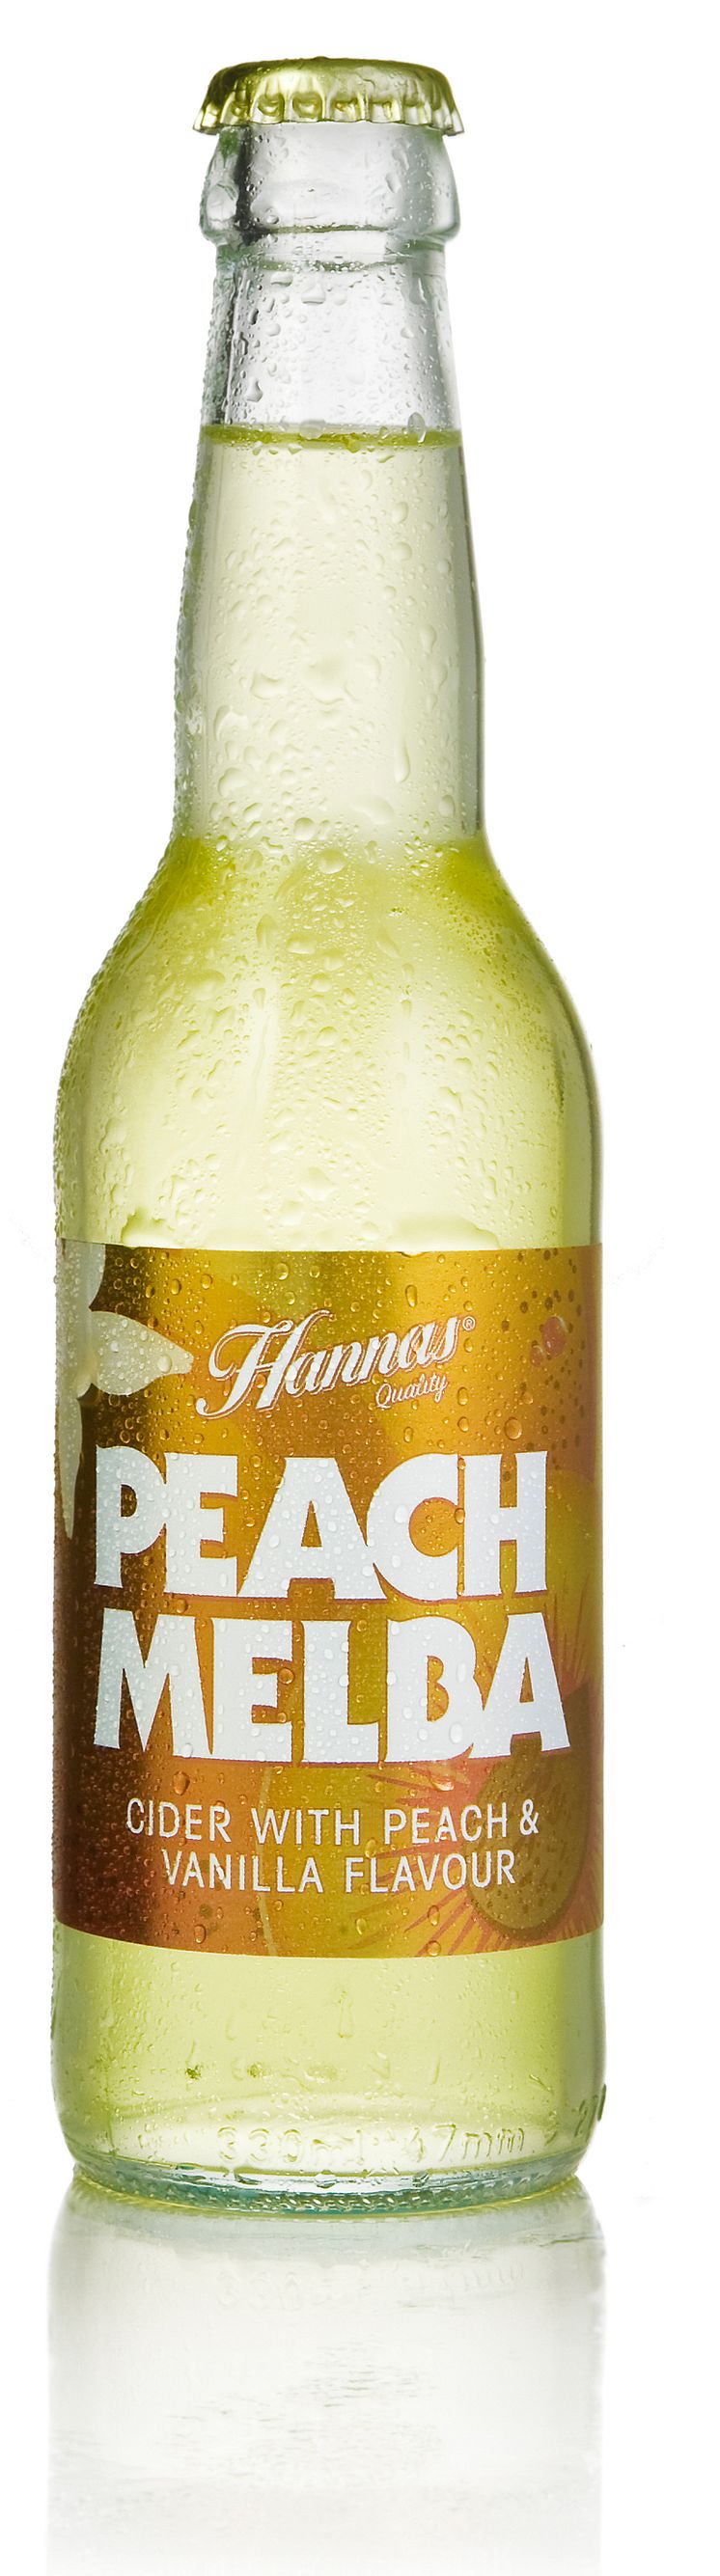 Hannas Peach Melba